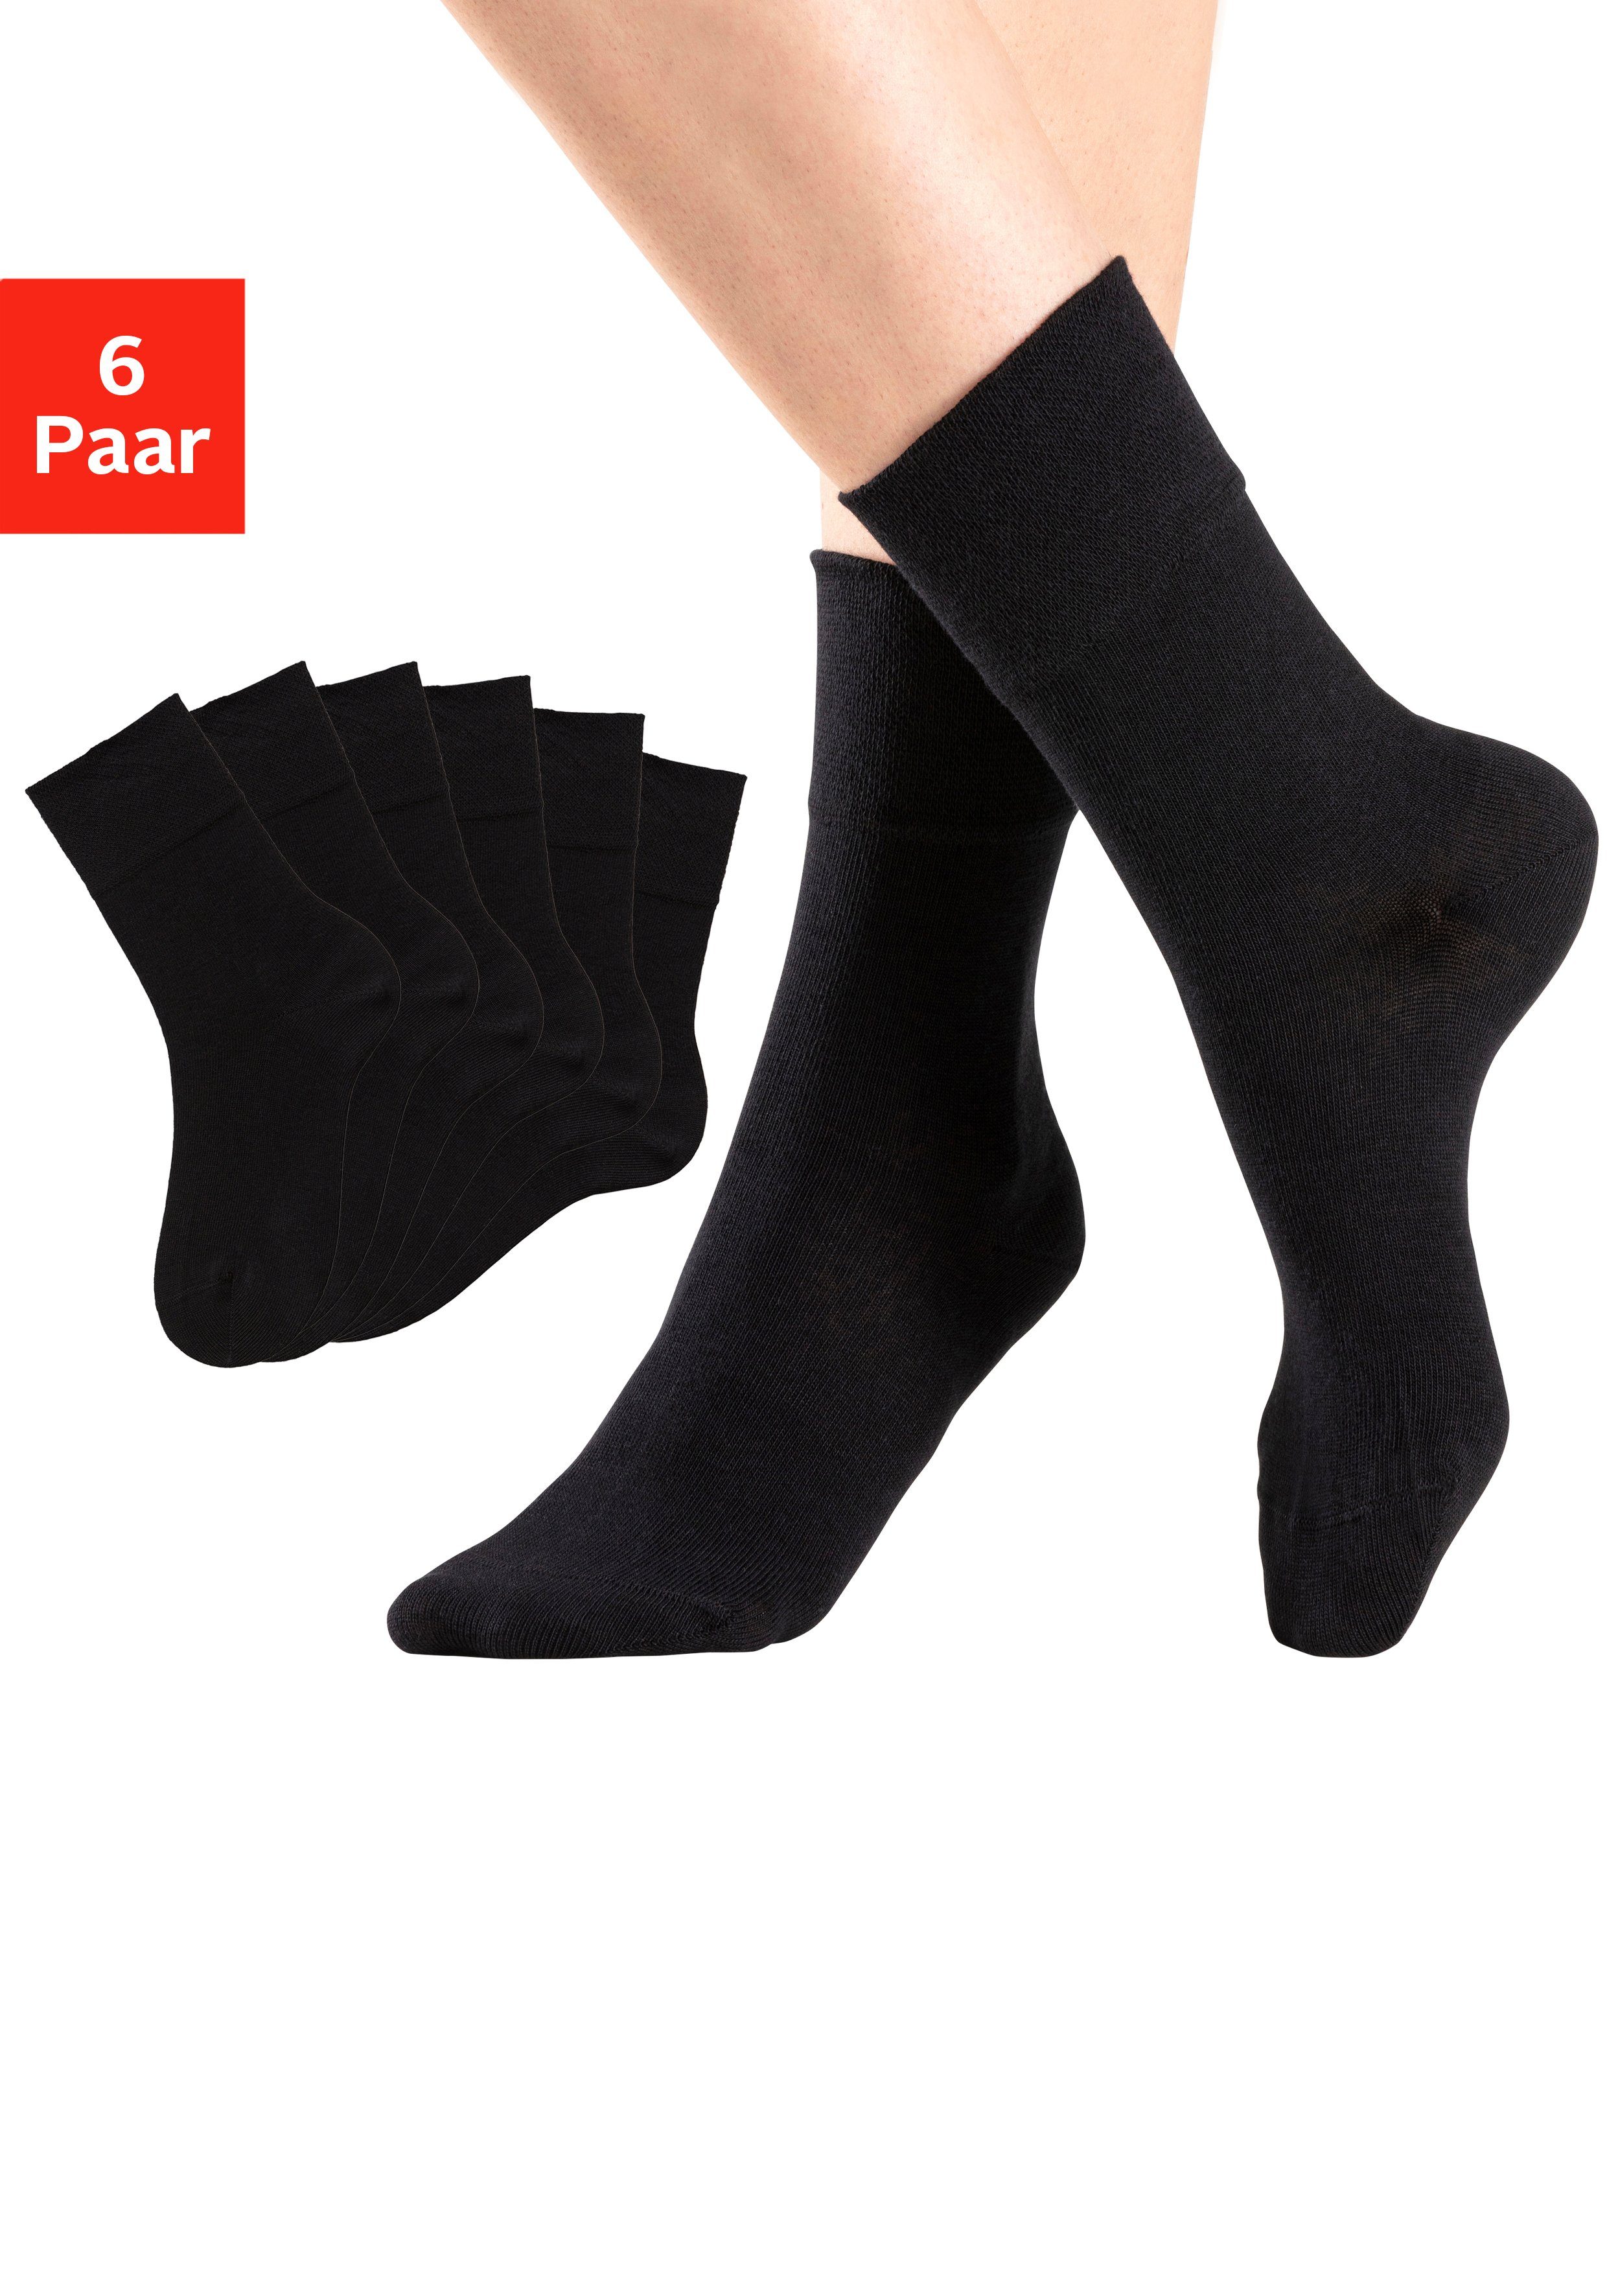 H.I.S Socken (Set, 6-Paar) mit Komfortbund auch für Diabetiker geeignet 6x schwarz